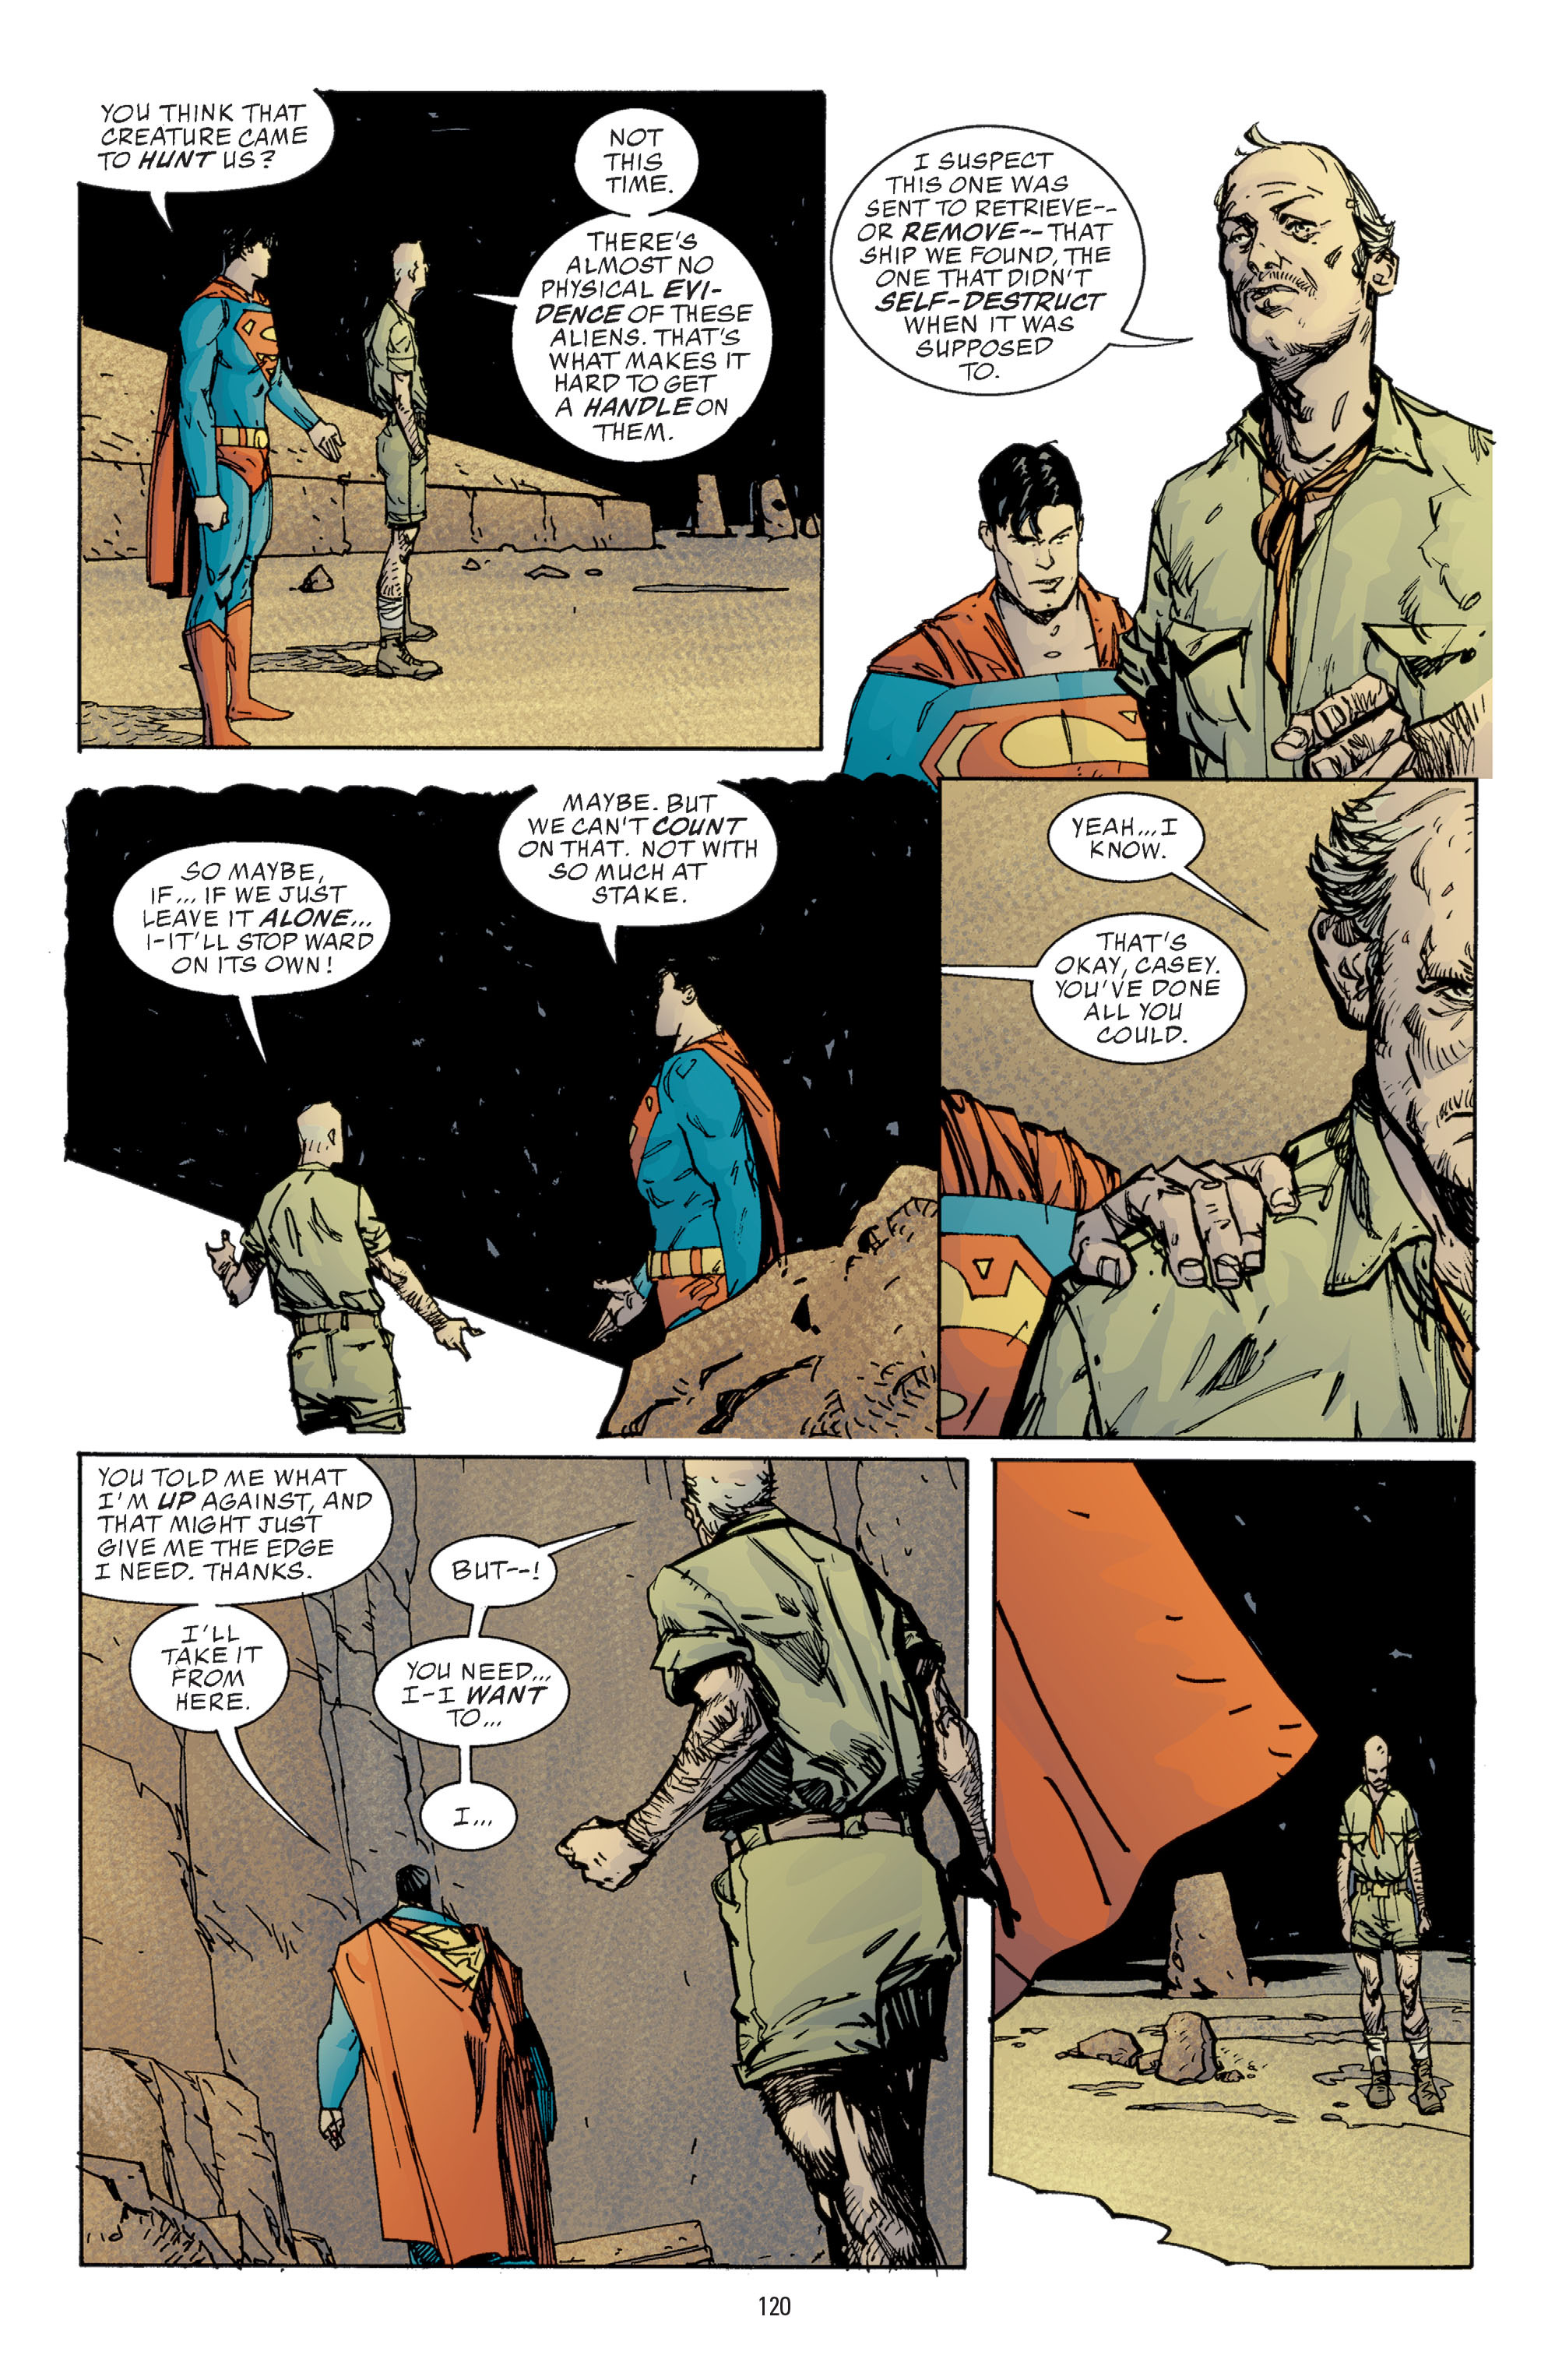 DC Comics/Dark Horse Comics: Justice League Full #1 - English 118